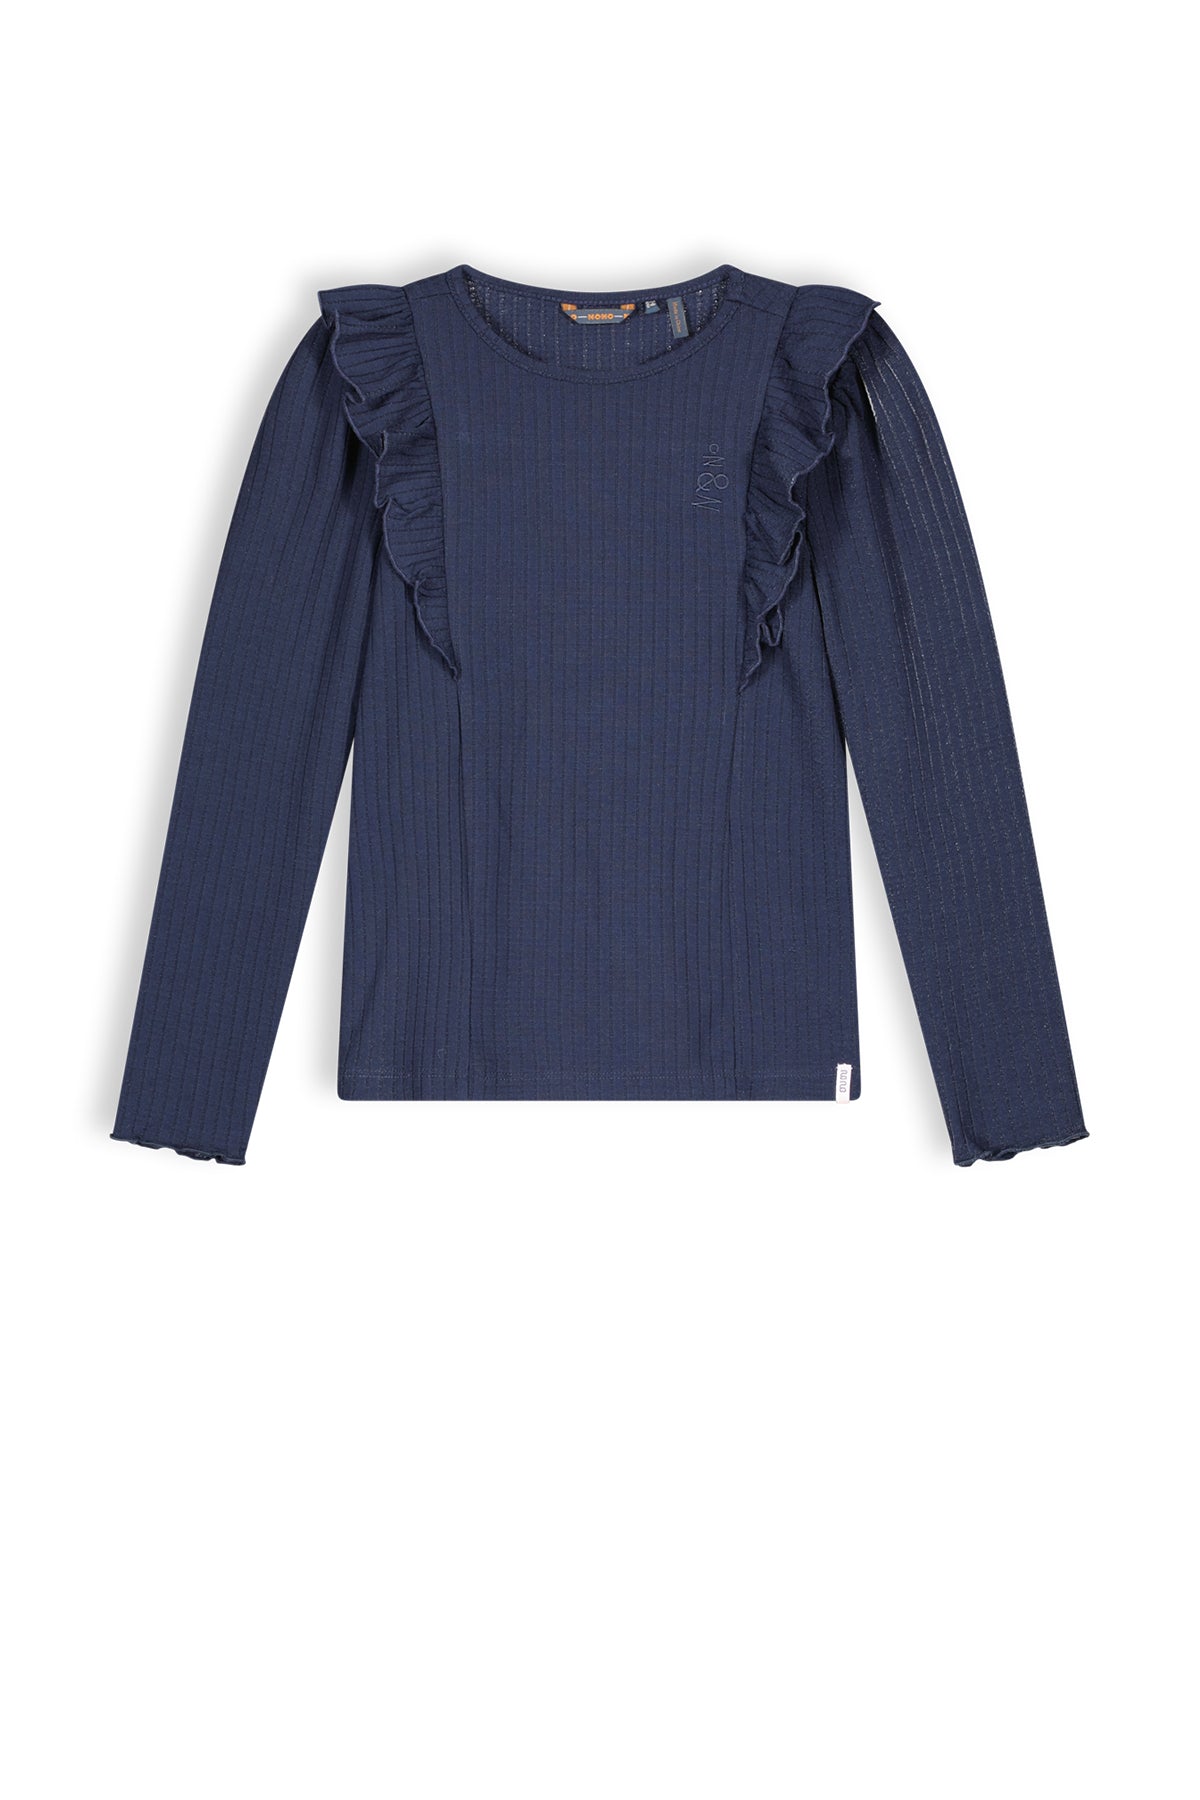 Meisjes Keo girls rib jersey tshirt l/sl van NoNo in de kleur Navy Blazer in maat 134-140.